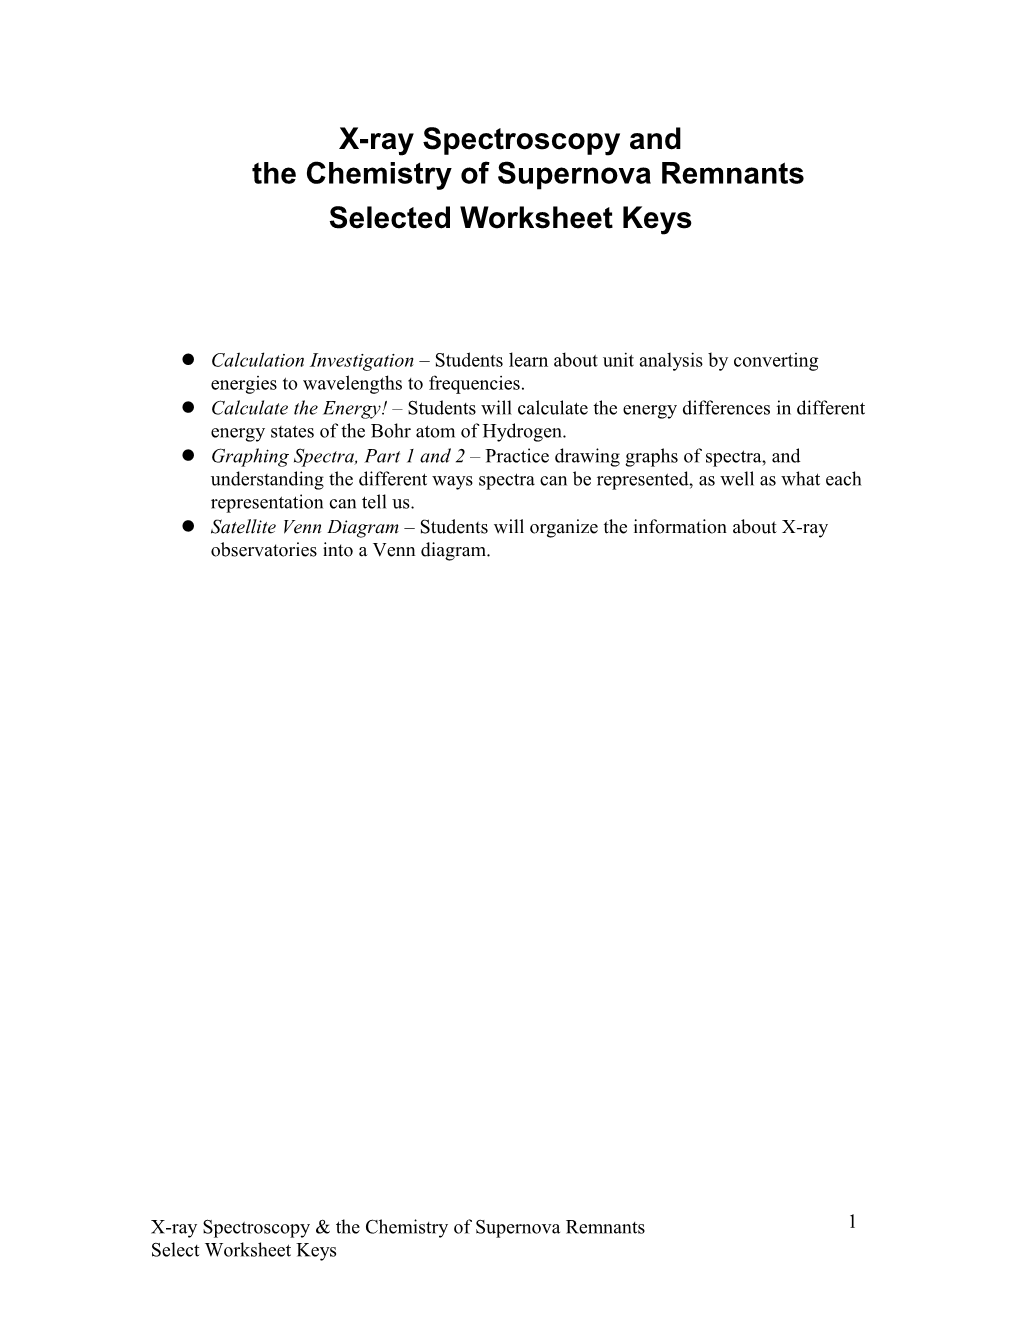 X-Ray Spectroscopy Andthe Chemistry of Supernova Remnants